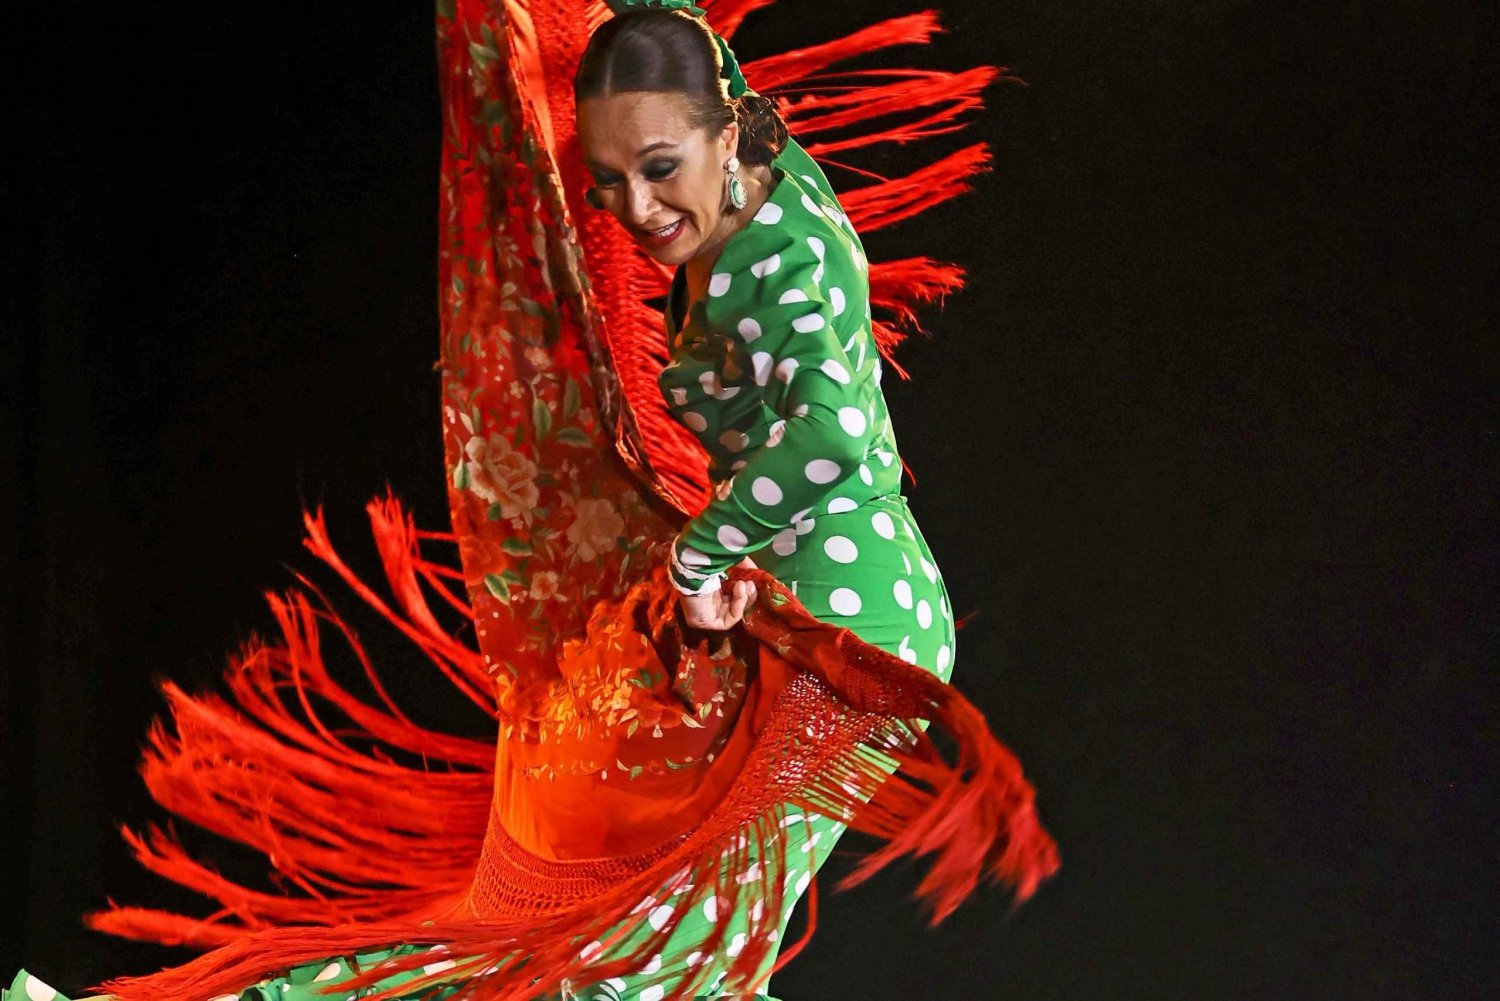 Palma: Flamenco-esitys Tablao Flamenco Almassa ja juoma